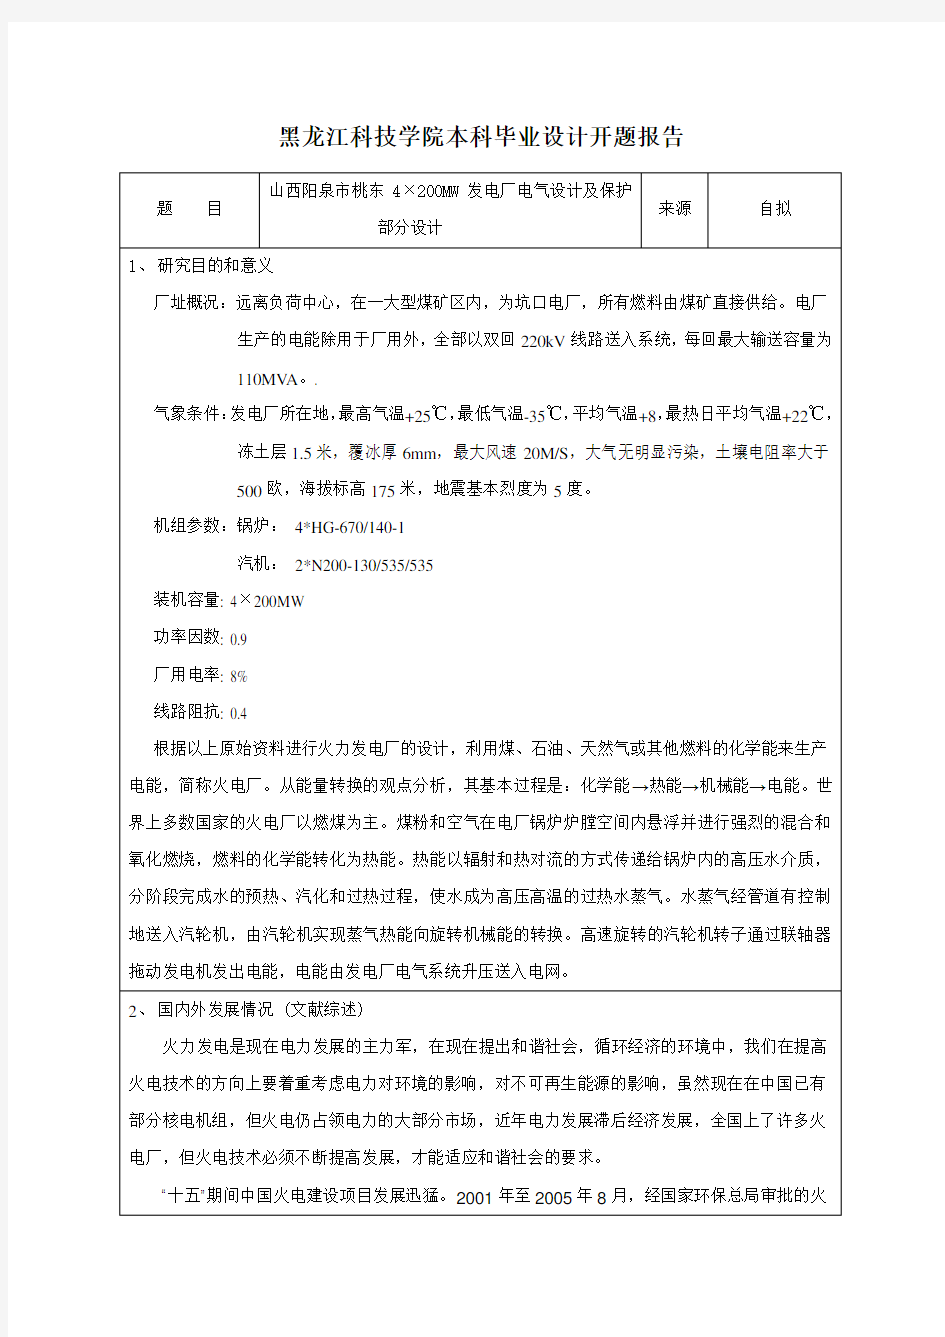 张宁-4×200MW火力发电厂电气一次部分毕业设计开题报告